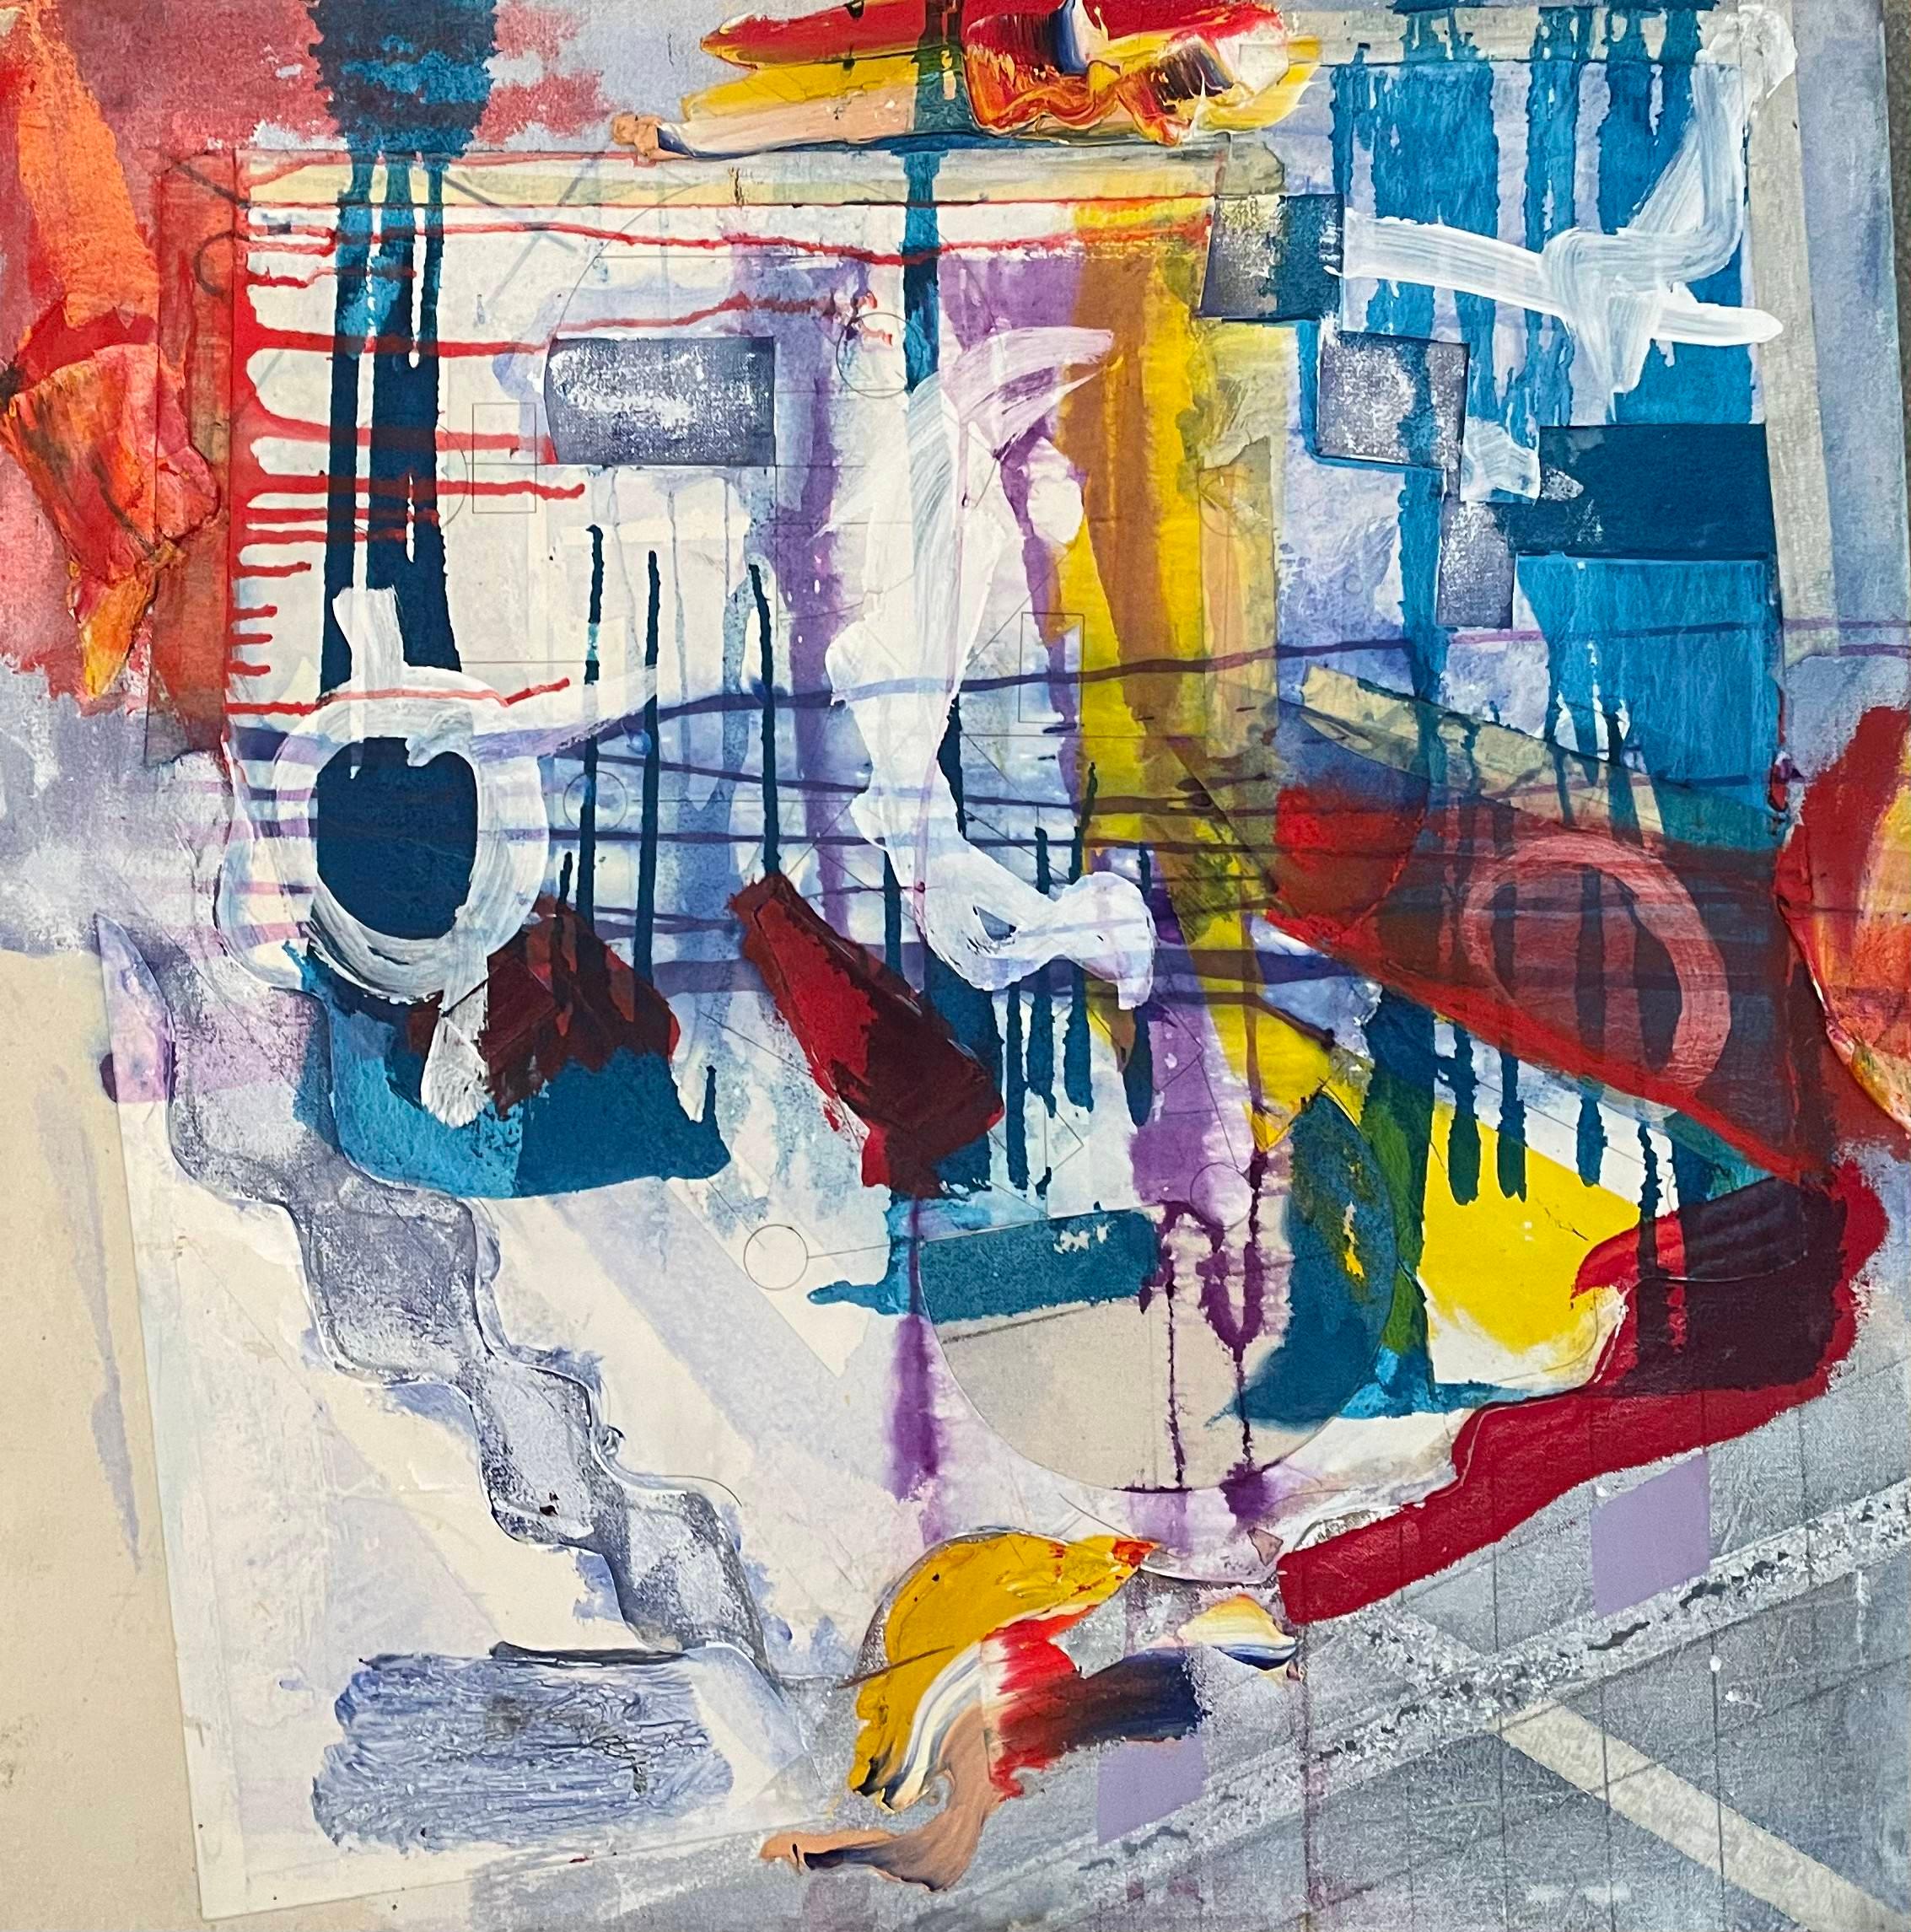 "Interplay" von Steven Rehfeld ist ein fesselndes, 25" x 25" großes, zeitgenössisches, abstraktes Mischtechnikwerk, das den komplizierten Tanz zwischen Struktur und Spontaneität verkörpert. Die Leinwand ist ein lebhaftes Tableau aus Farbe und